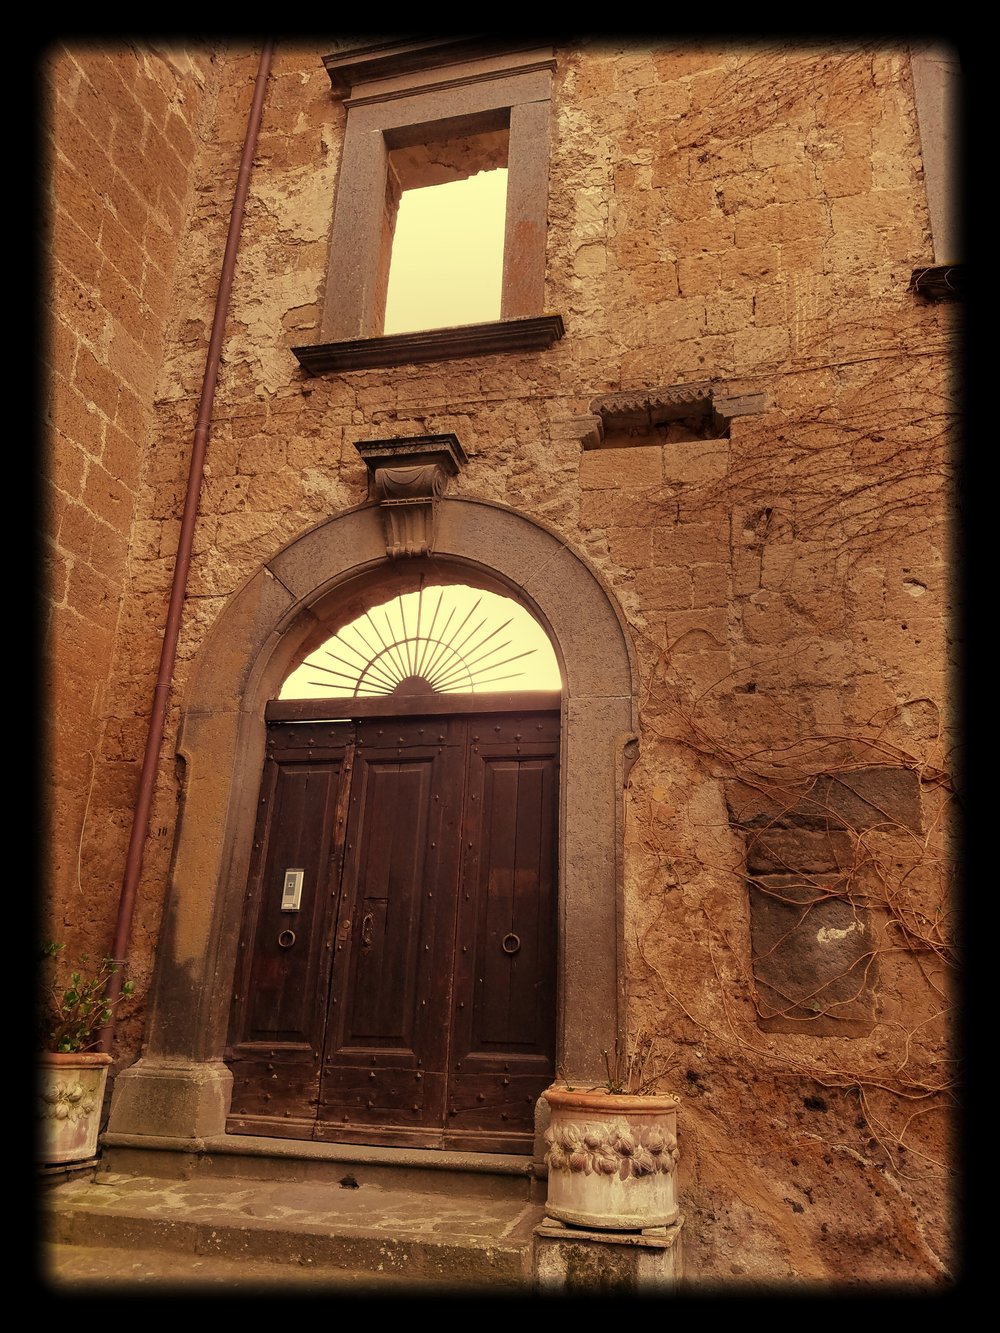 Facade of a fallen palazzo in Civita di Bagnoregio